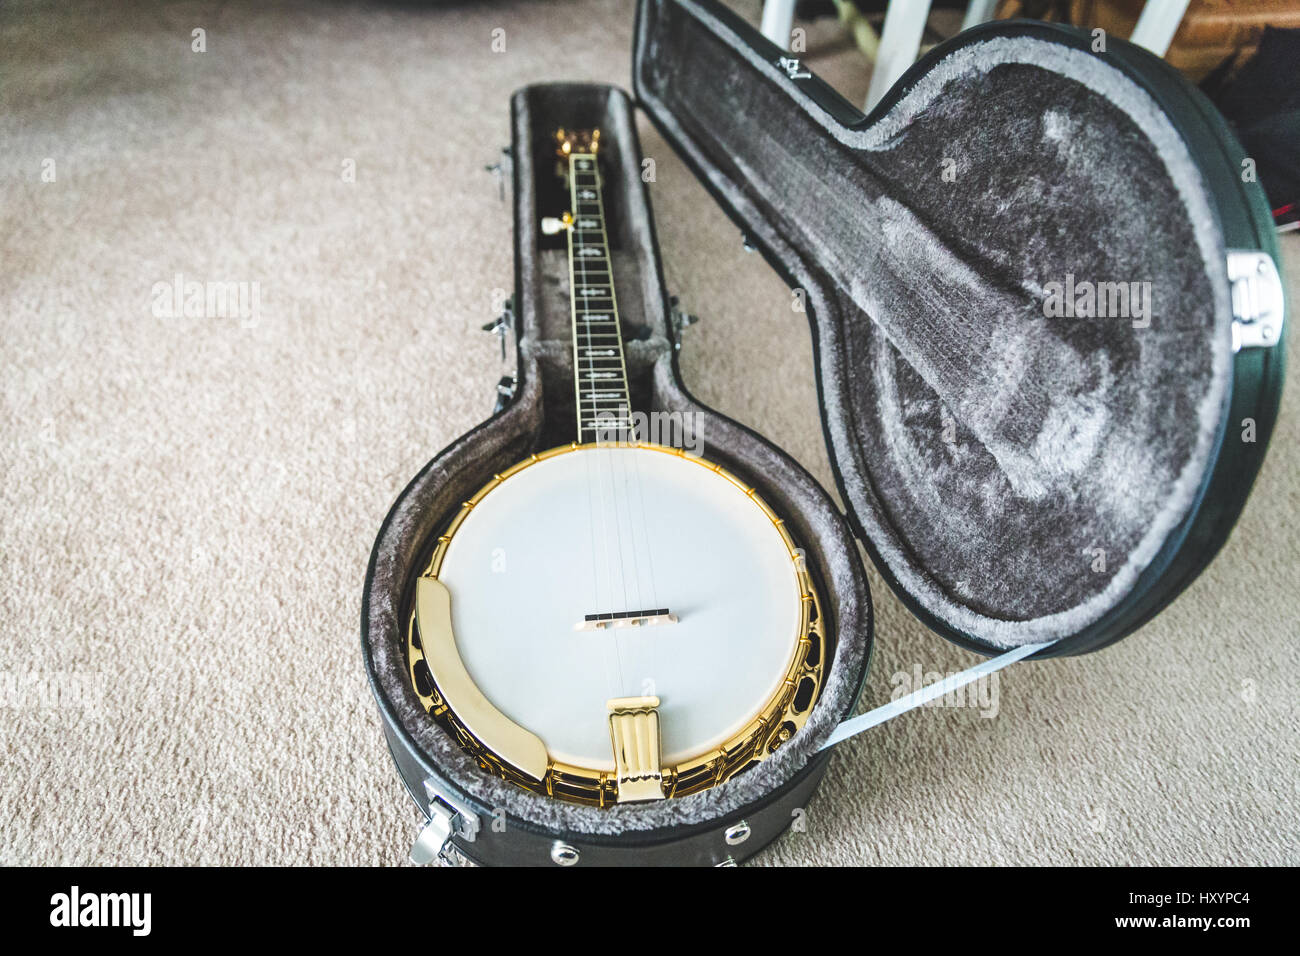 High-value banjo in custom hard case. Banjo has mahogany body and gold accents. Stock Photo